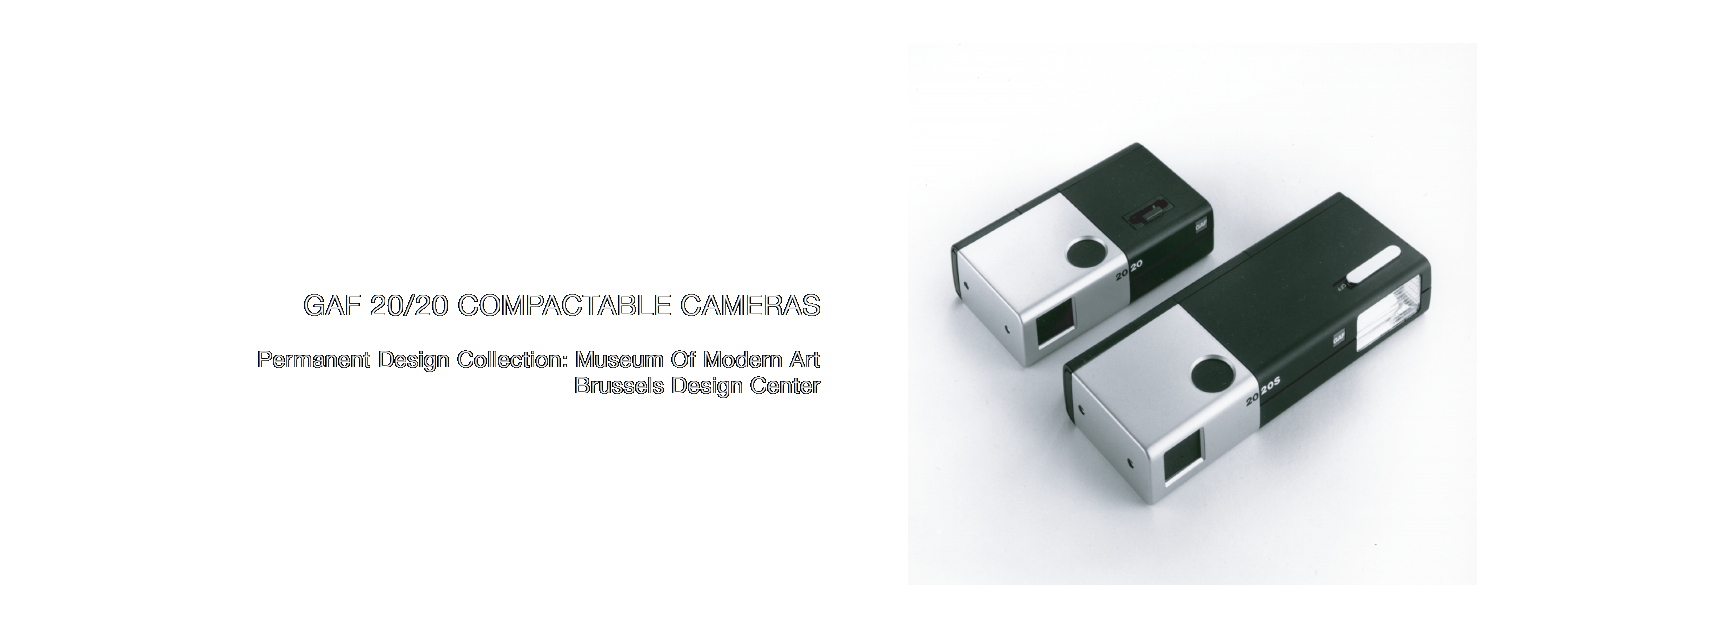 GAF 20/20 Compactible Cameras